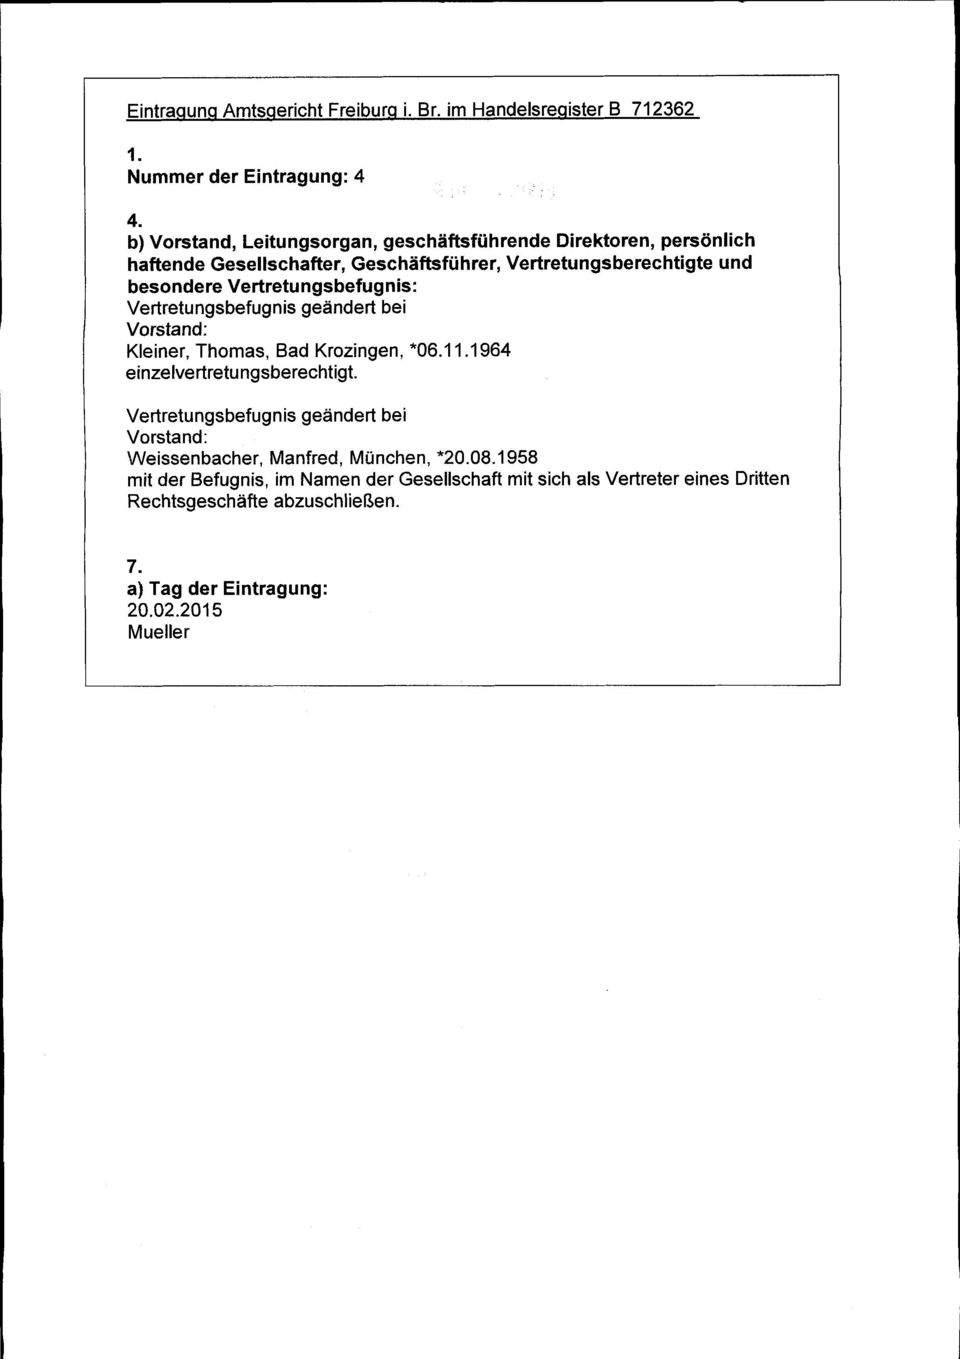 Vertretungsberechtigte und besondere Vertretungsbefugnis: Vertretungsbefugnis geändert bei Vorstand: Kleiner, Thomas, Bad Krozingen, *06.